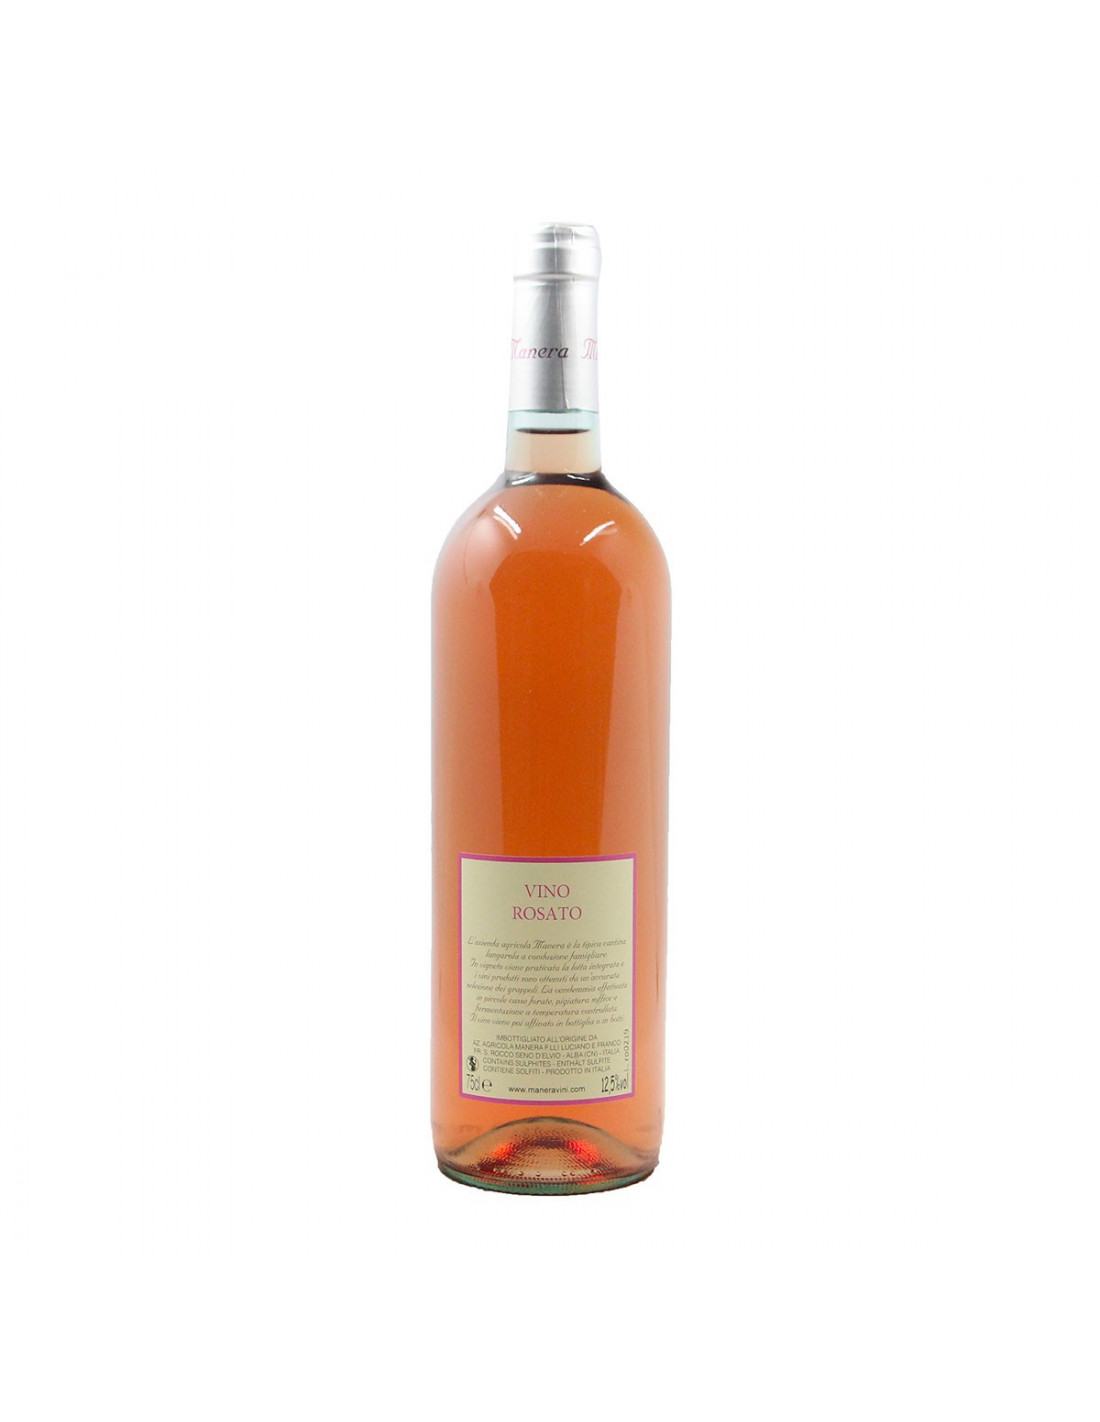 Bottiglia prosecco con etichetta personalizzata 200 ml Rosè